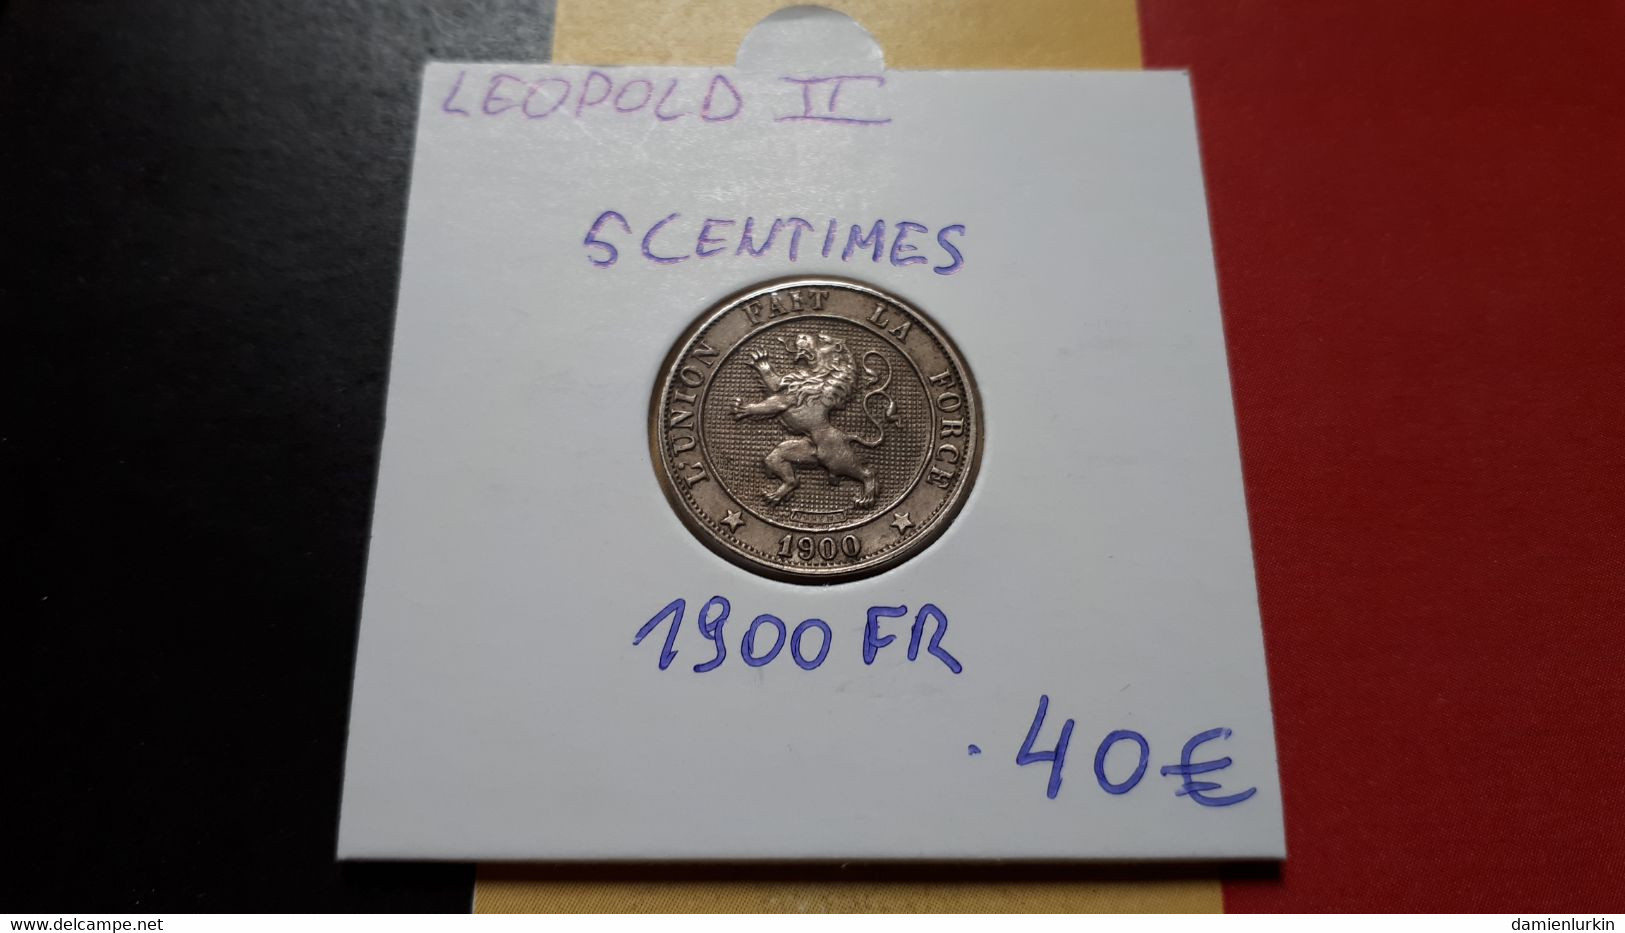 BELGIQUE LEOPOLD II RARE ET SUPERBE PRESQUE FDC 5 CENTIMES 1900 FR - 5 Centimes